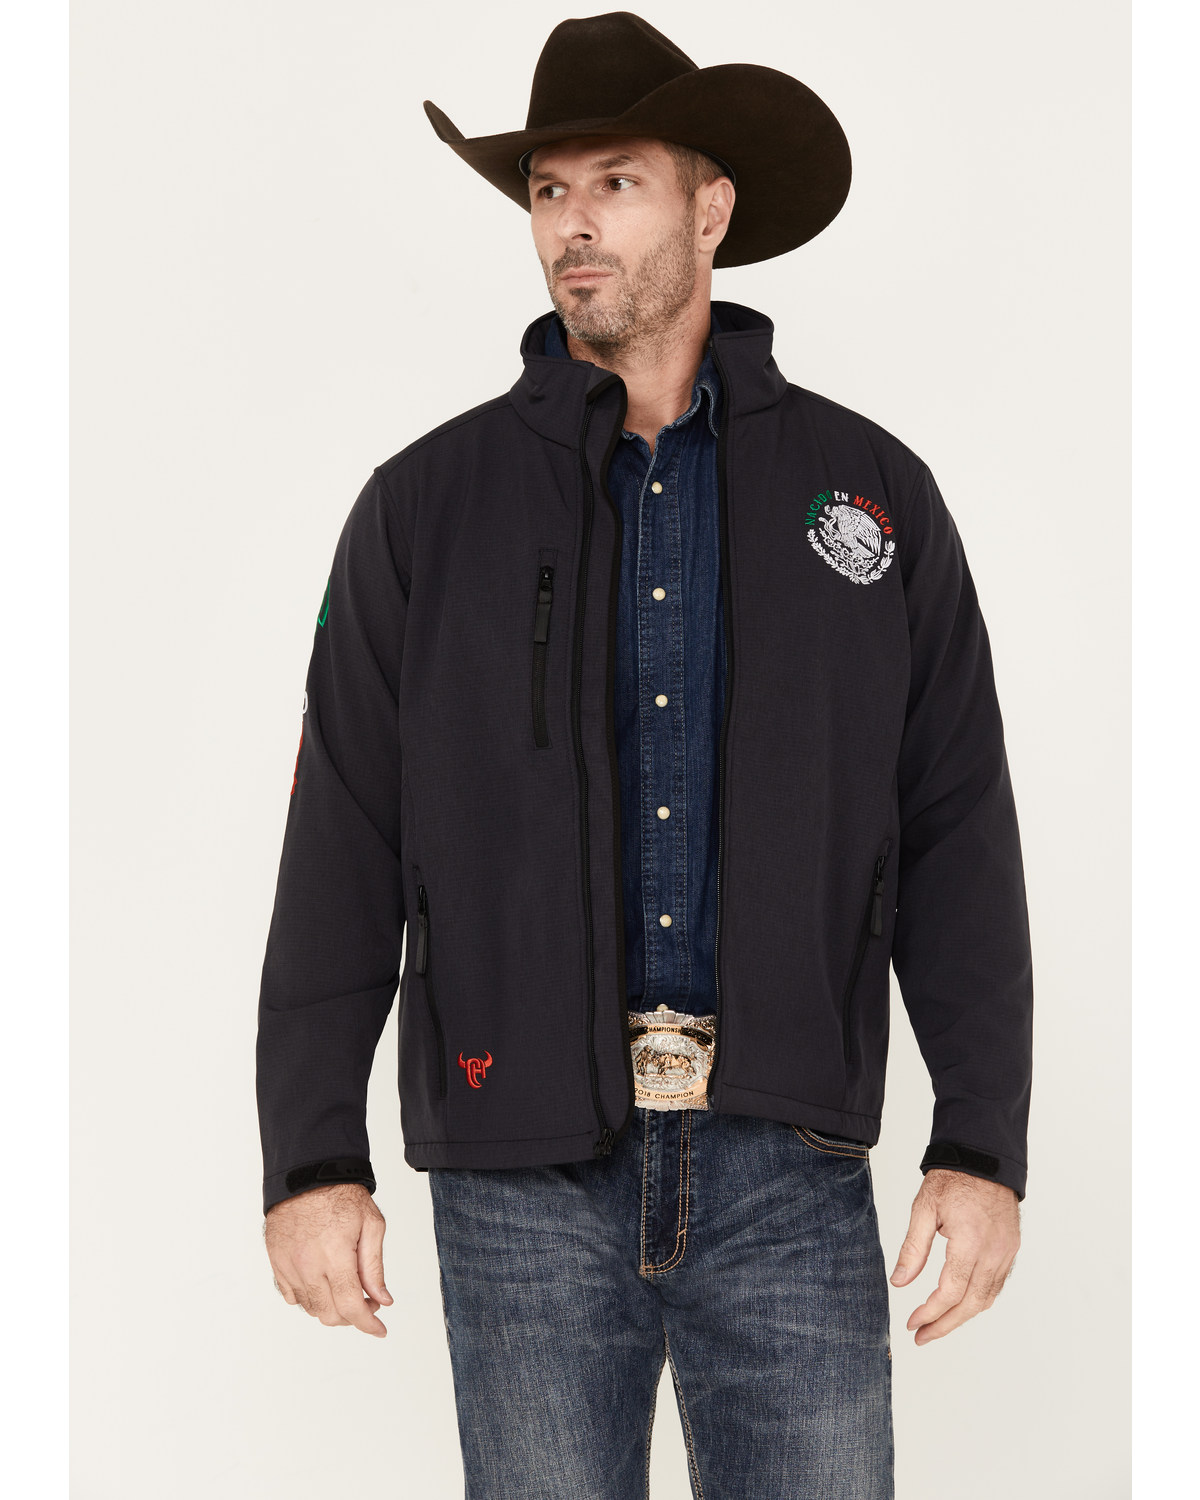 Cowboy Hardware Men's Nacido En Mexico Logo Softshell Jacket